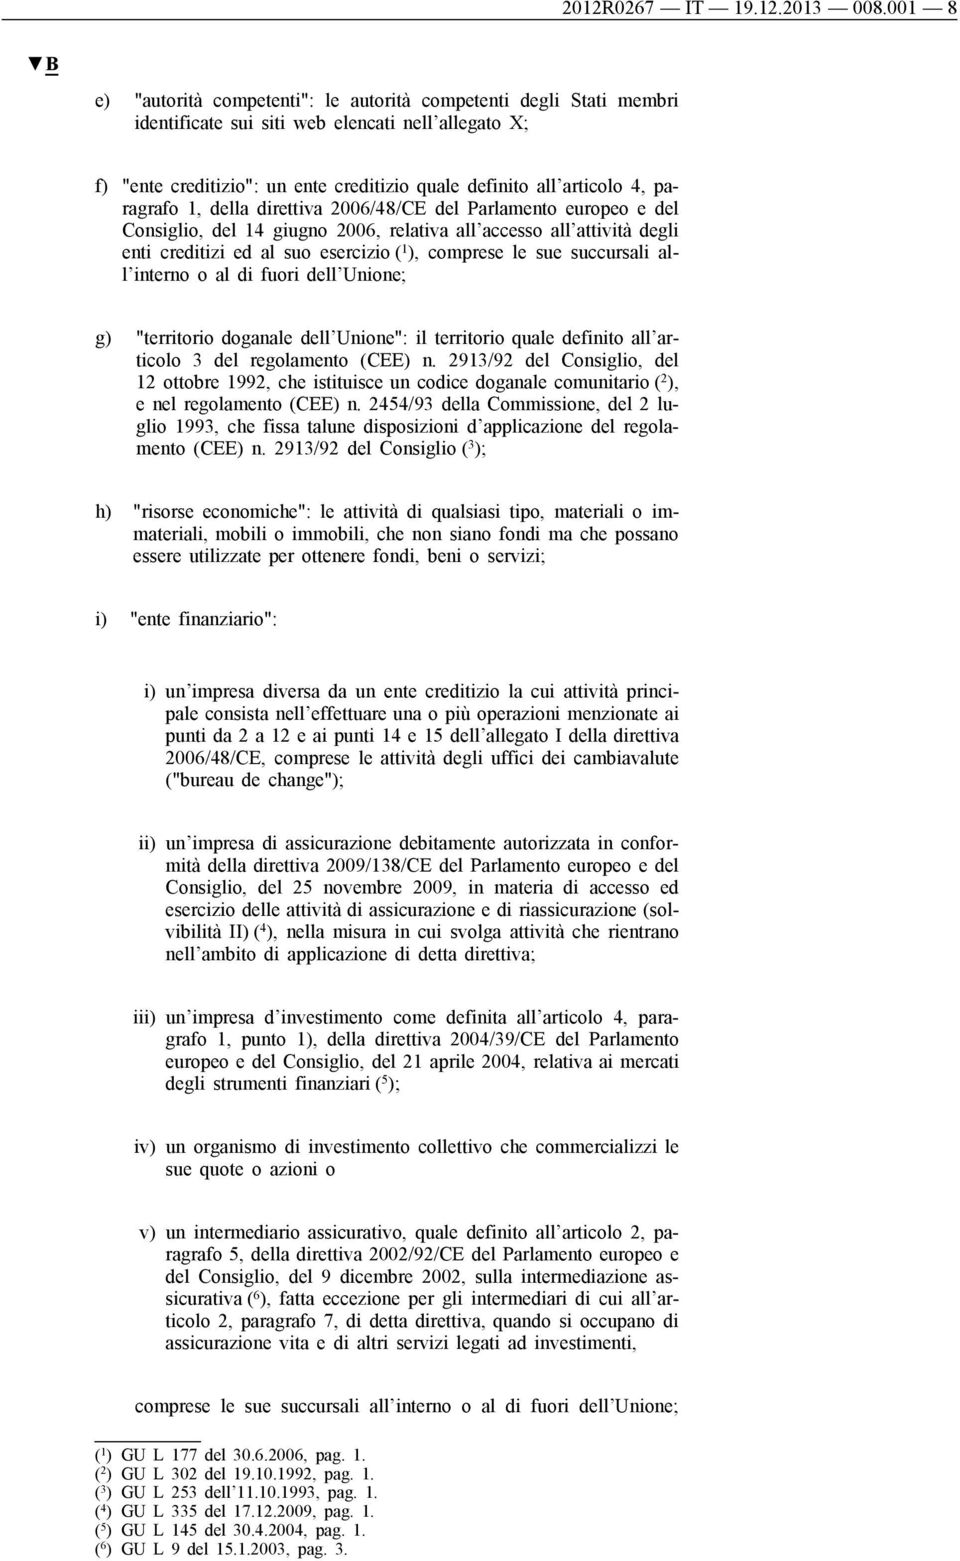 paragrafo 1, della direttiva 2006/48/CE del Parlamento europeo e del Consiglio, del 14 giugno 2006, relativa all accesso all attività degli enti creditizi ed al suo esercizio ( 1 ), comprese le sue